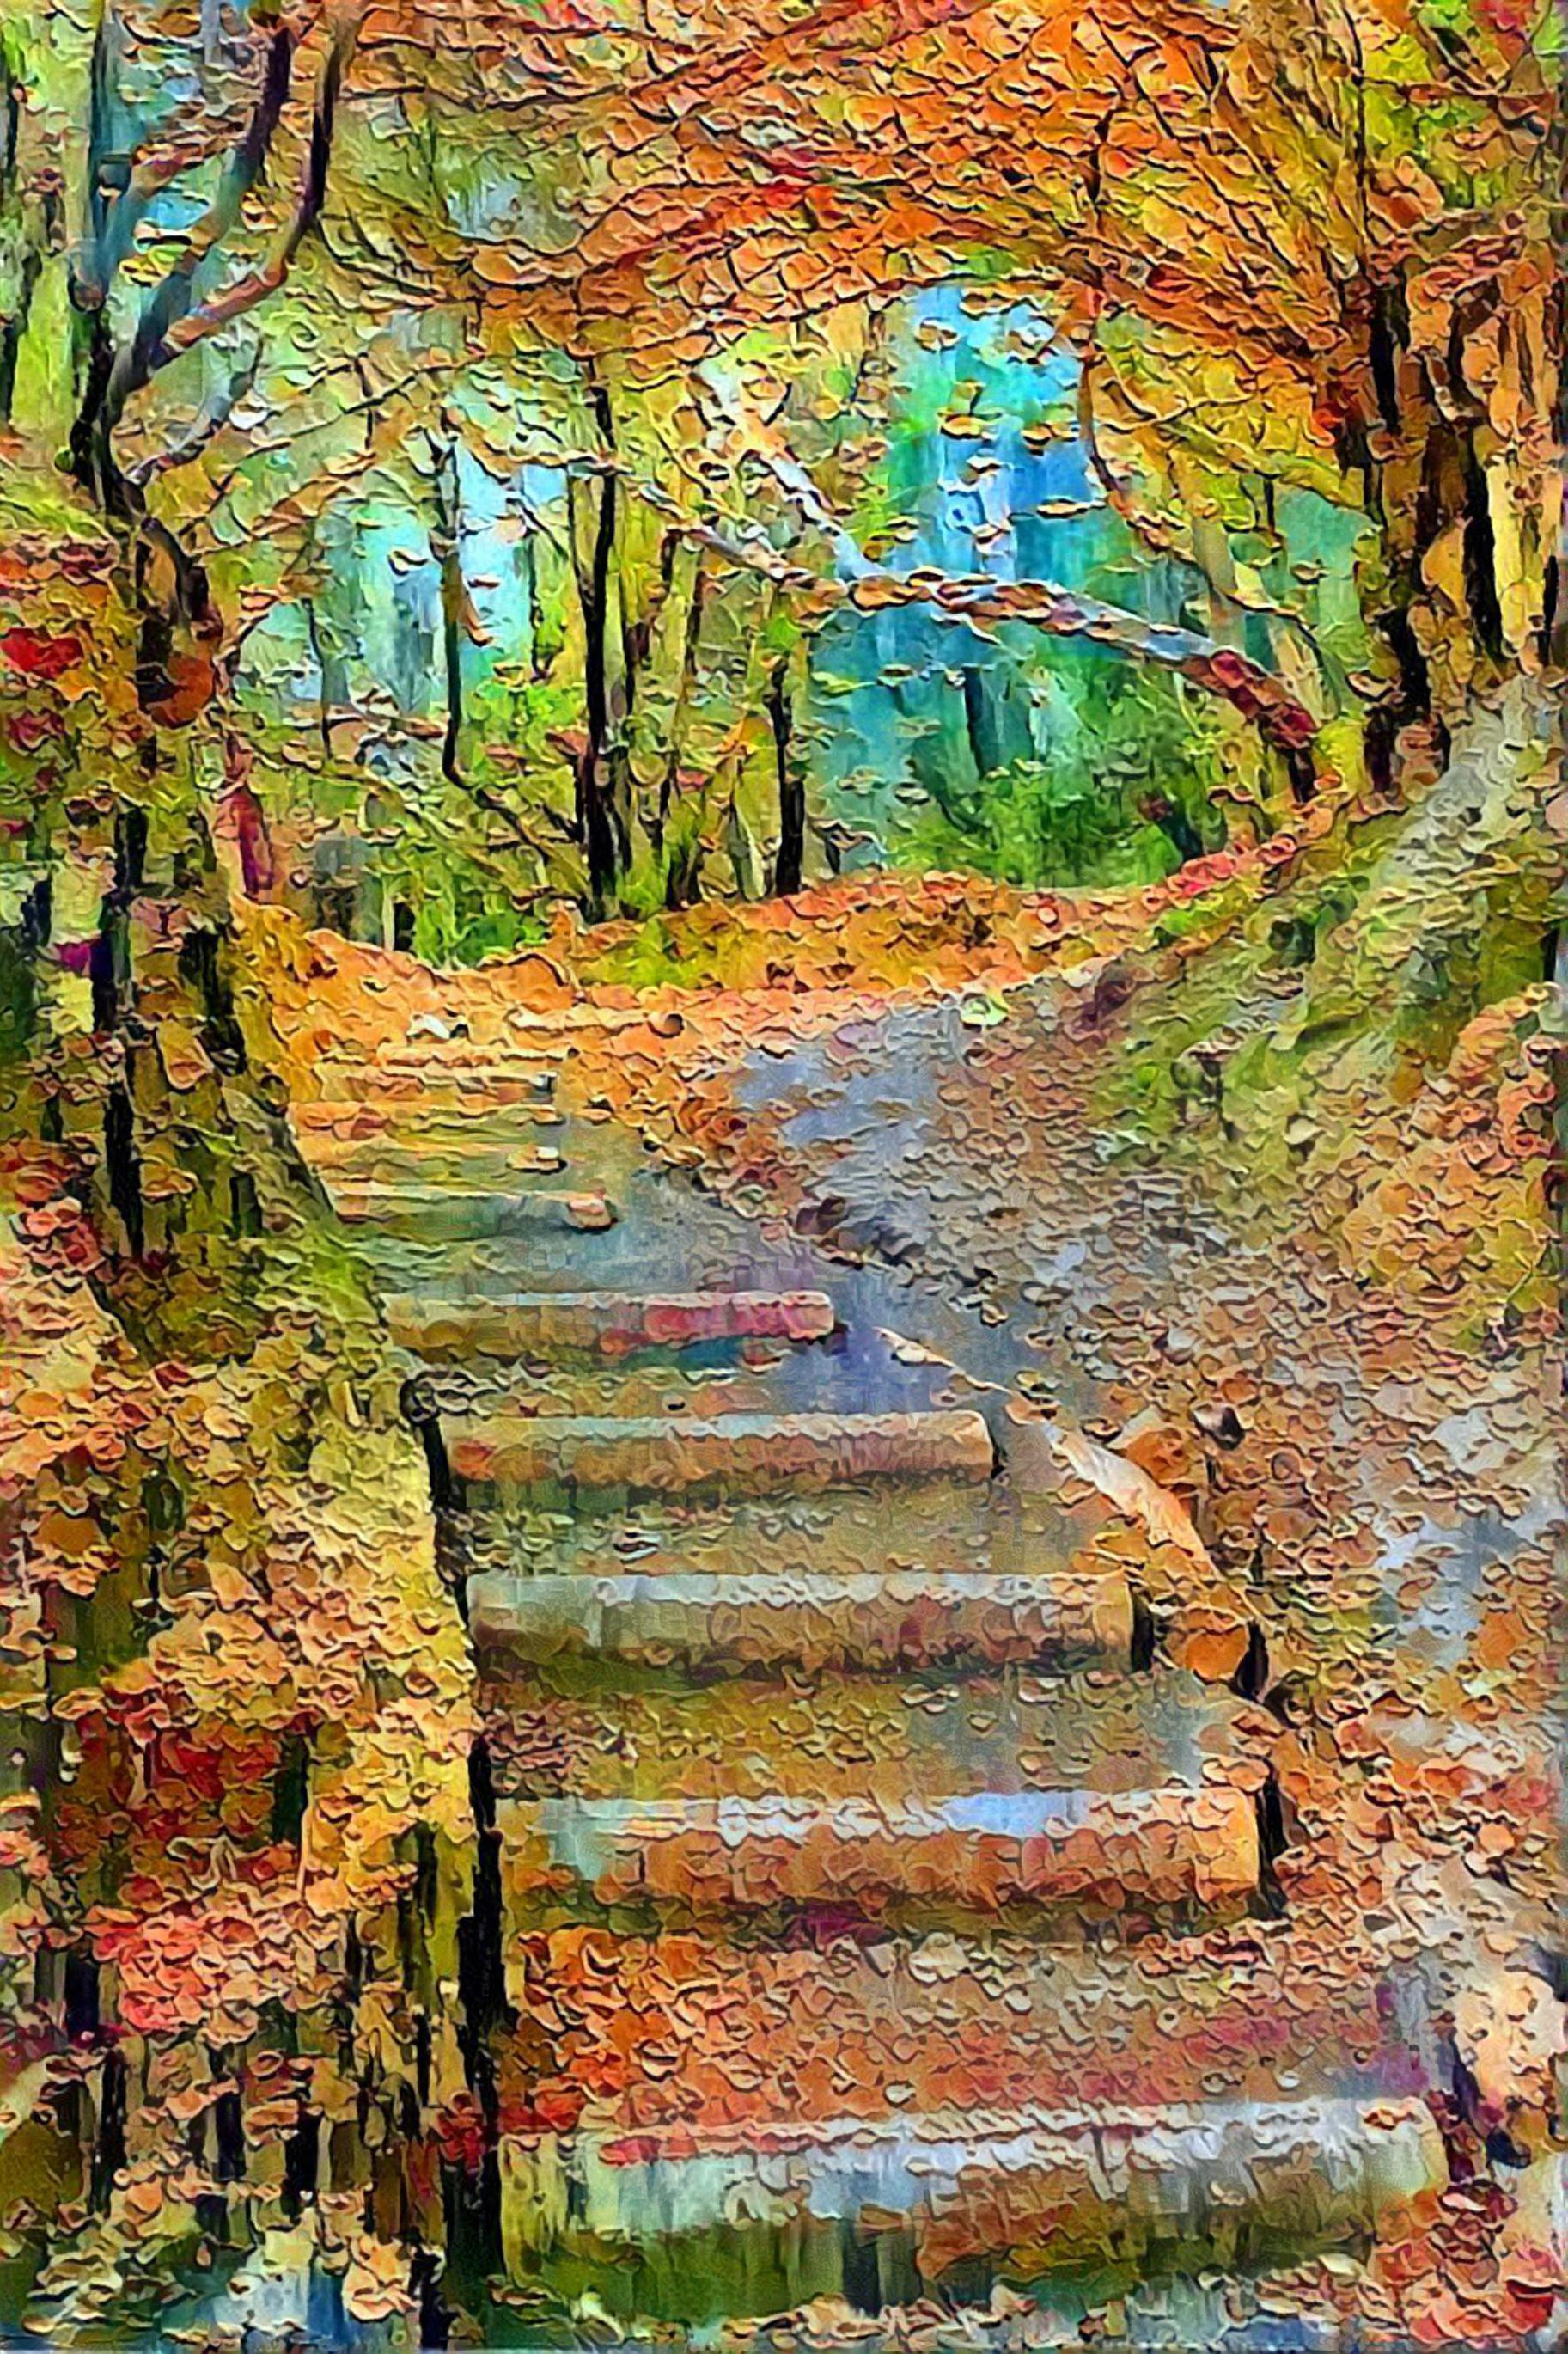 Stairway on an Autumn Path